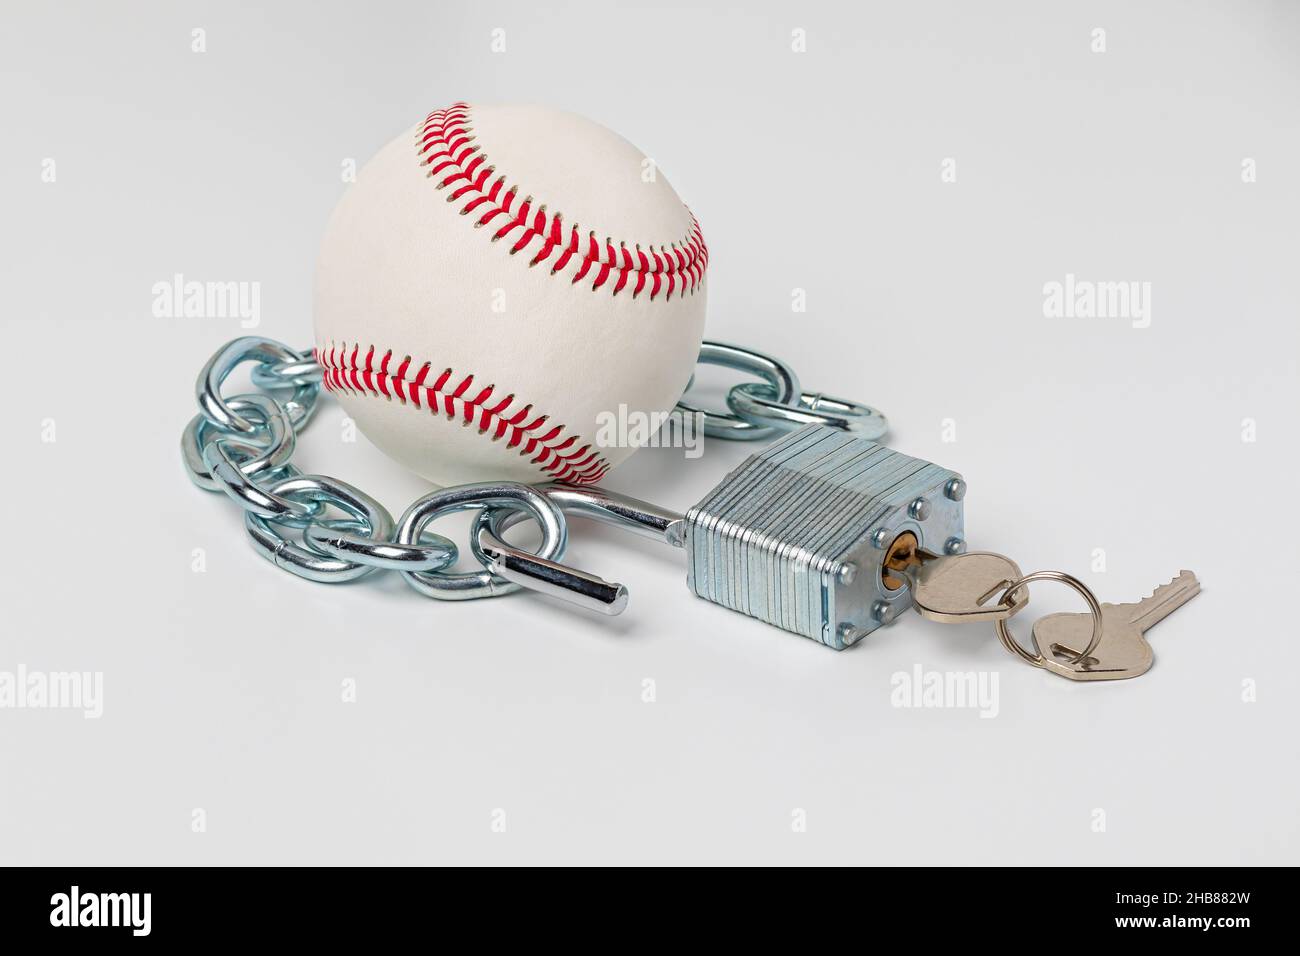 Base-ball avec chaîne et serrure ouverte.Concept de grève de baseball, de lock-out et d'accord de travail. Banque D'Images